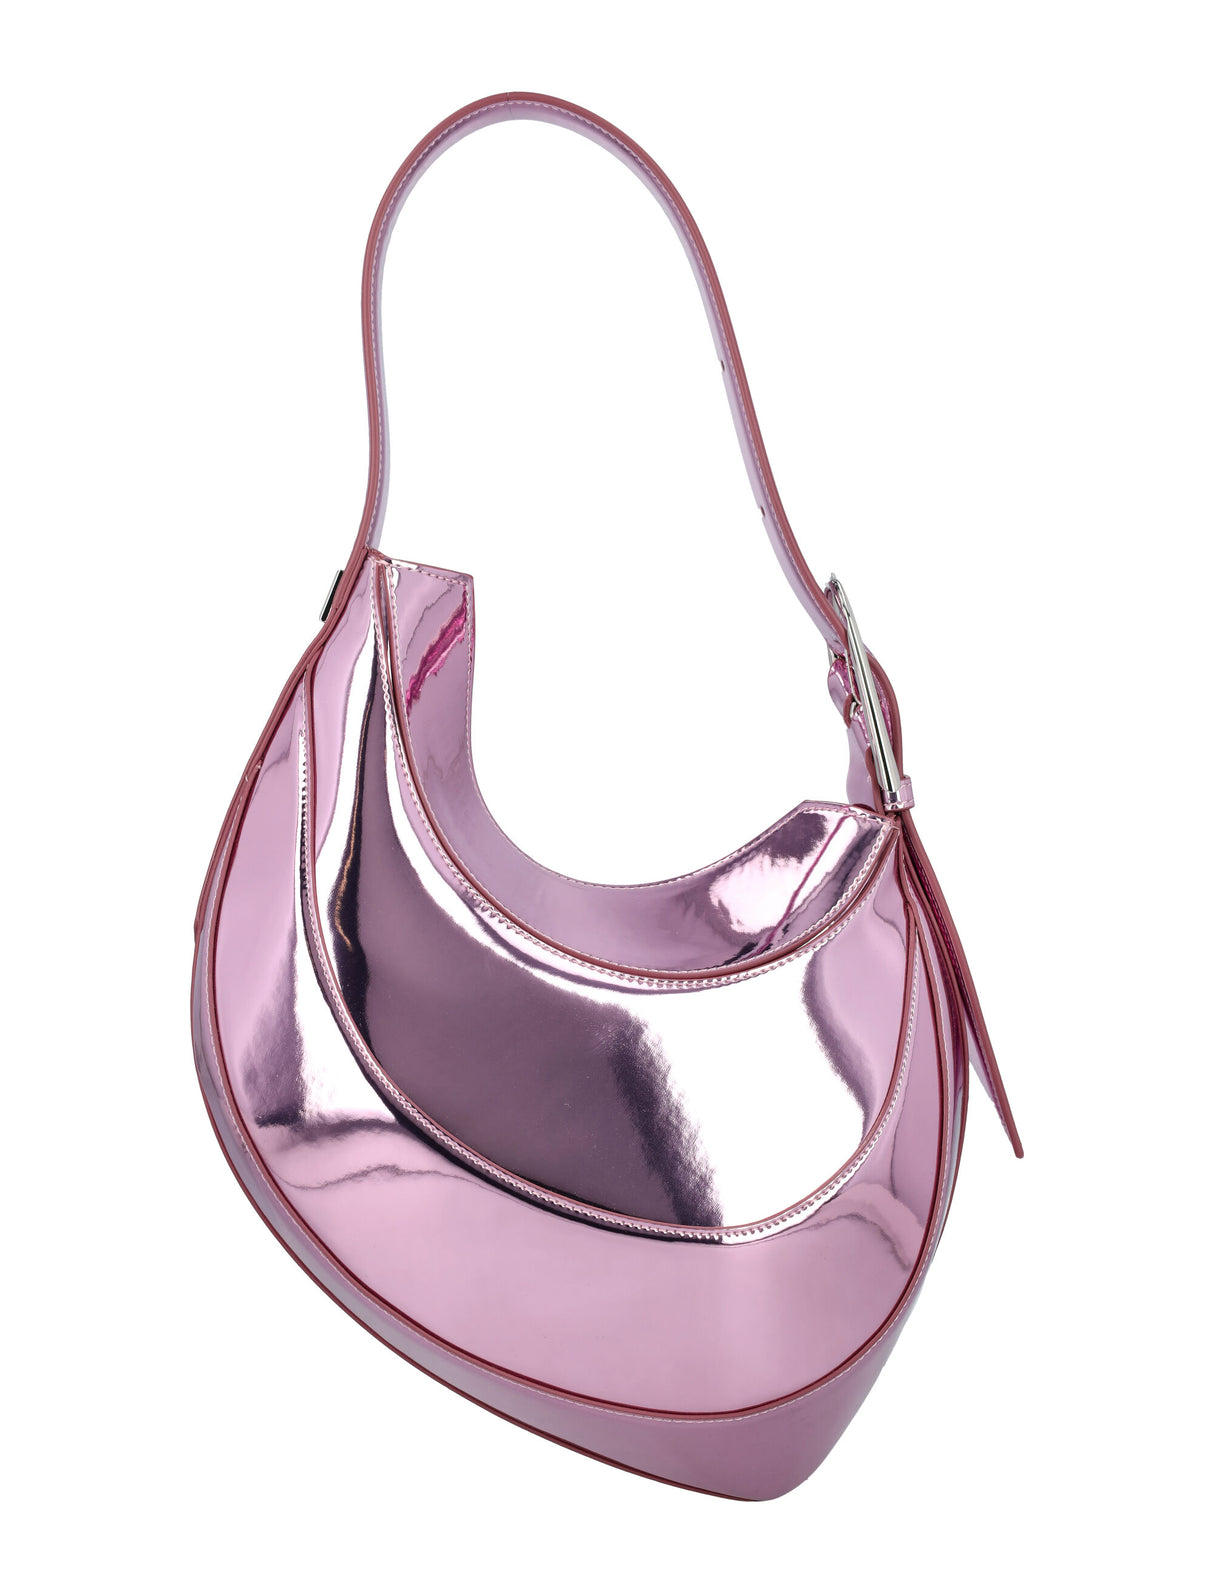 流行曲線造型手提包－粉紅適合女性